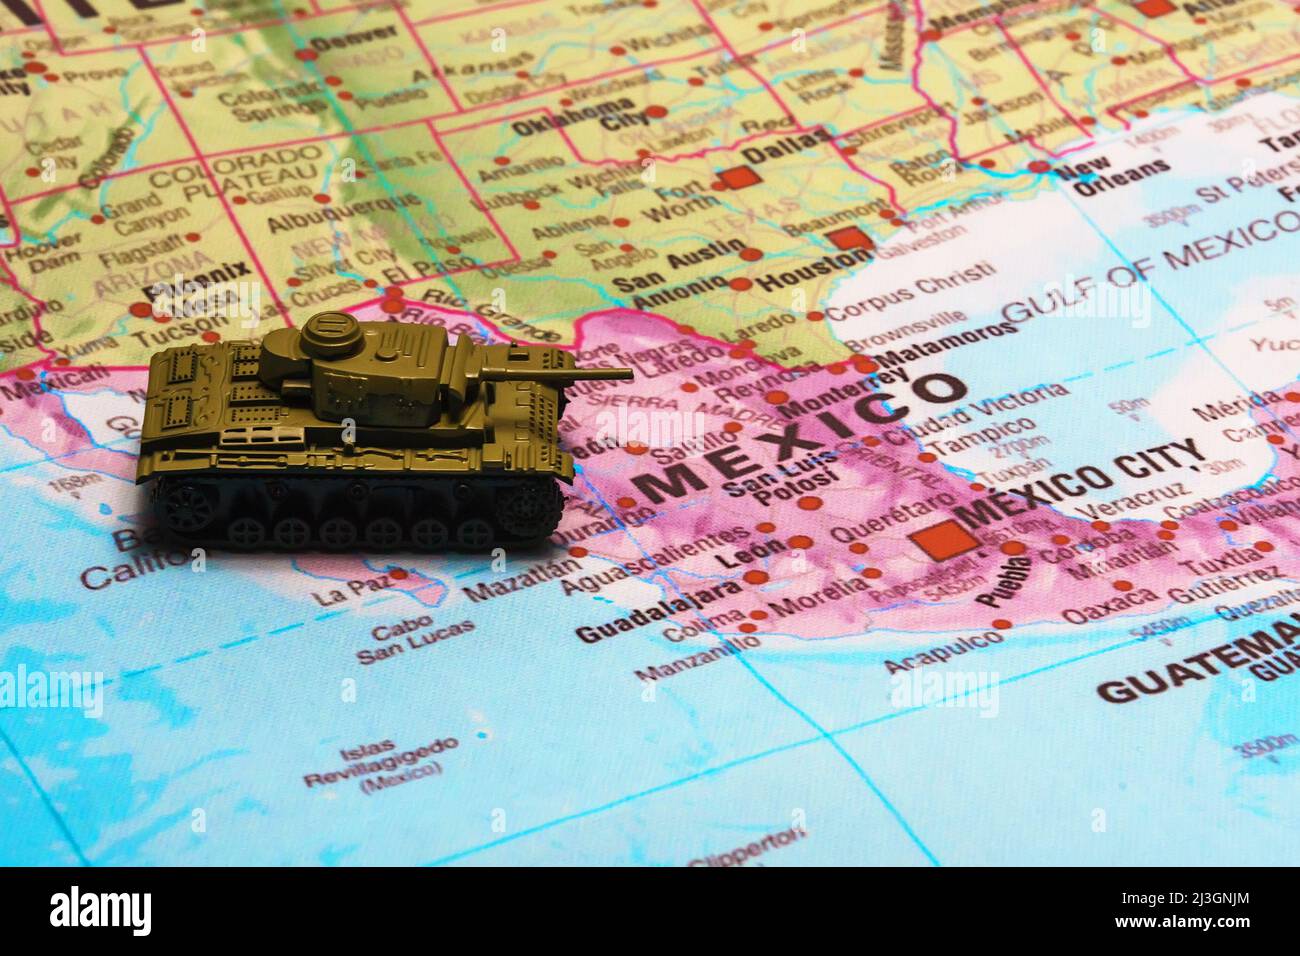 Spielzeugtanks auf der Karte. Krieg gegen Drogenkartelle in Mexiko. Stockfoto